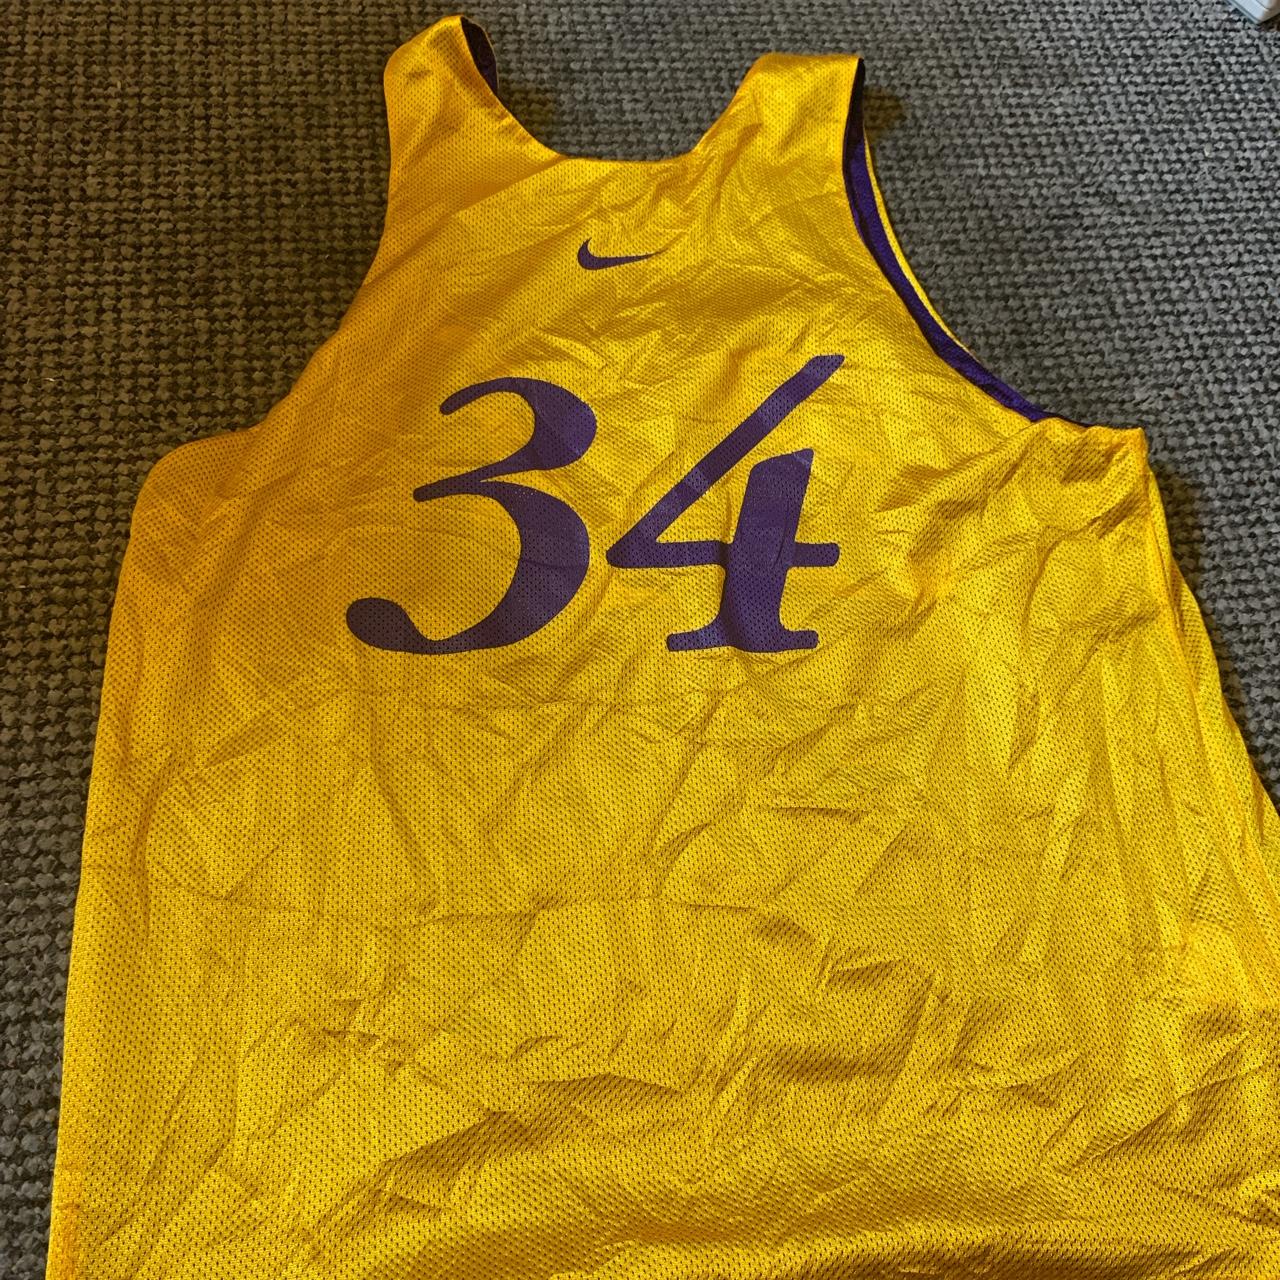 Lakers undershirt – nba_jersey.il